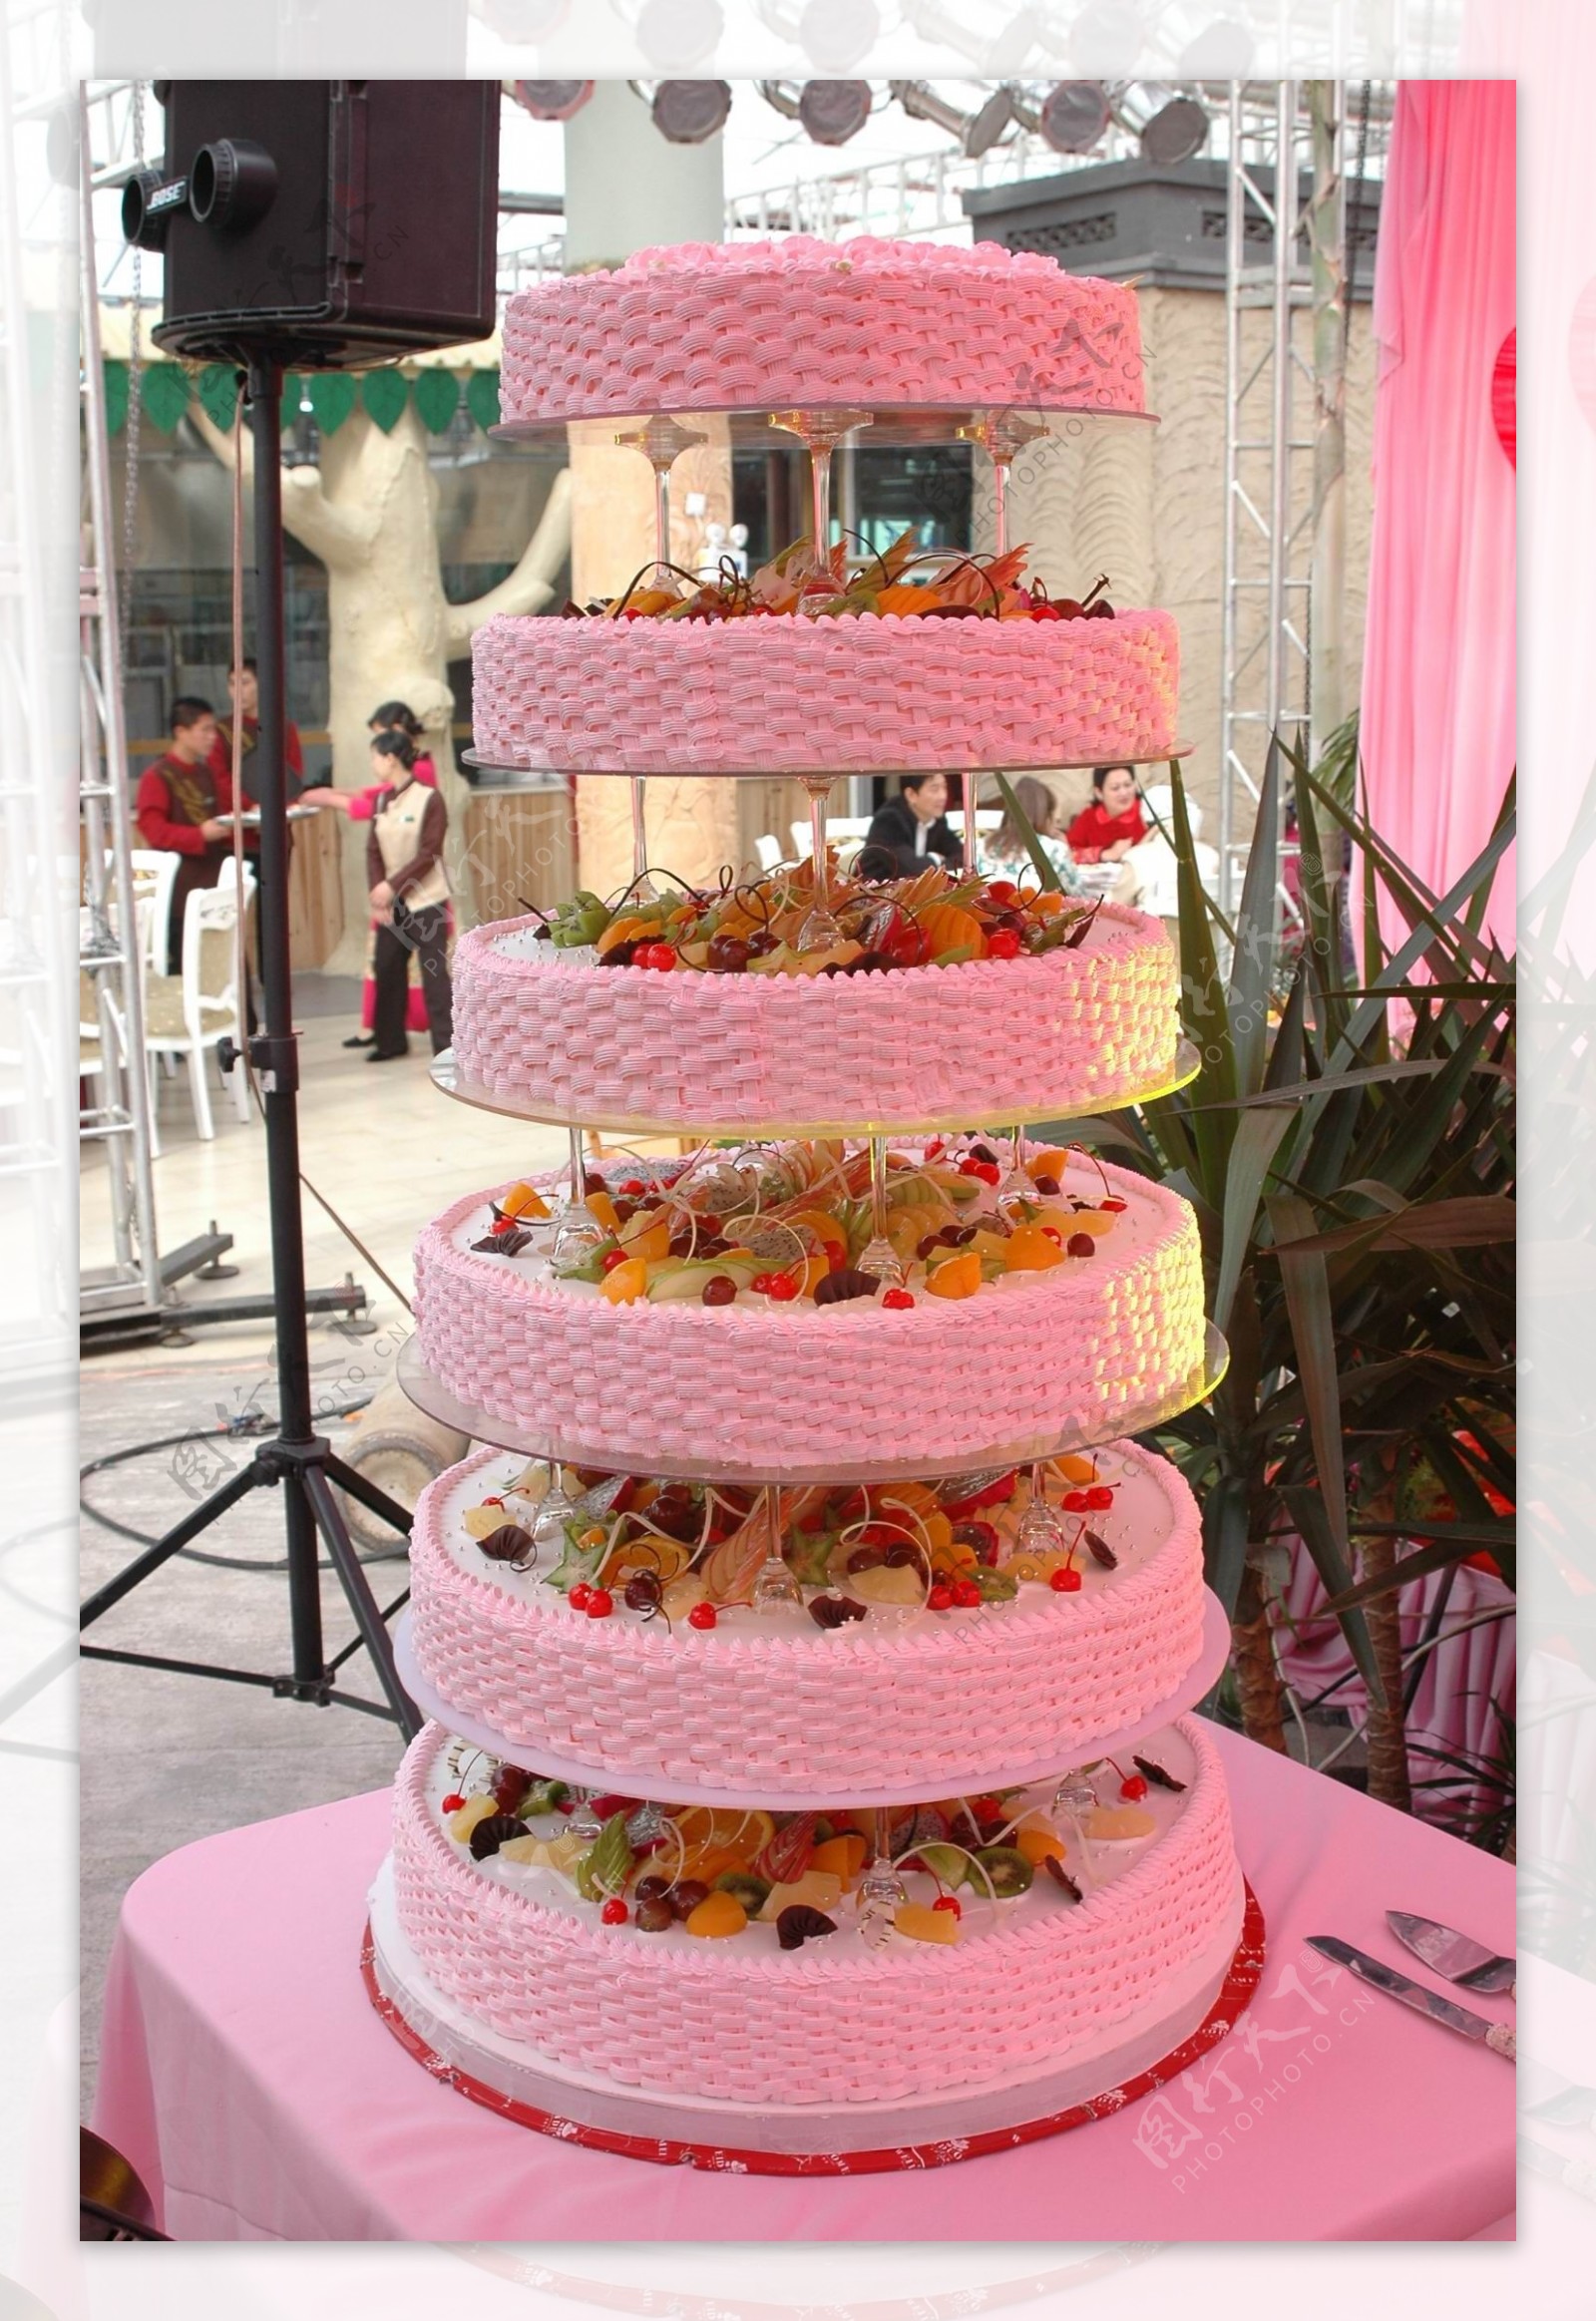 婚礼用蛋糕